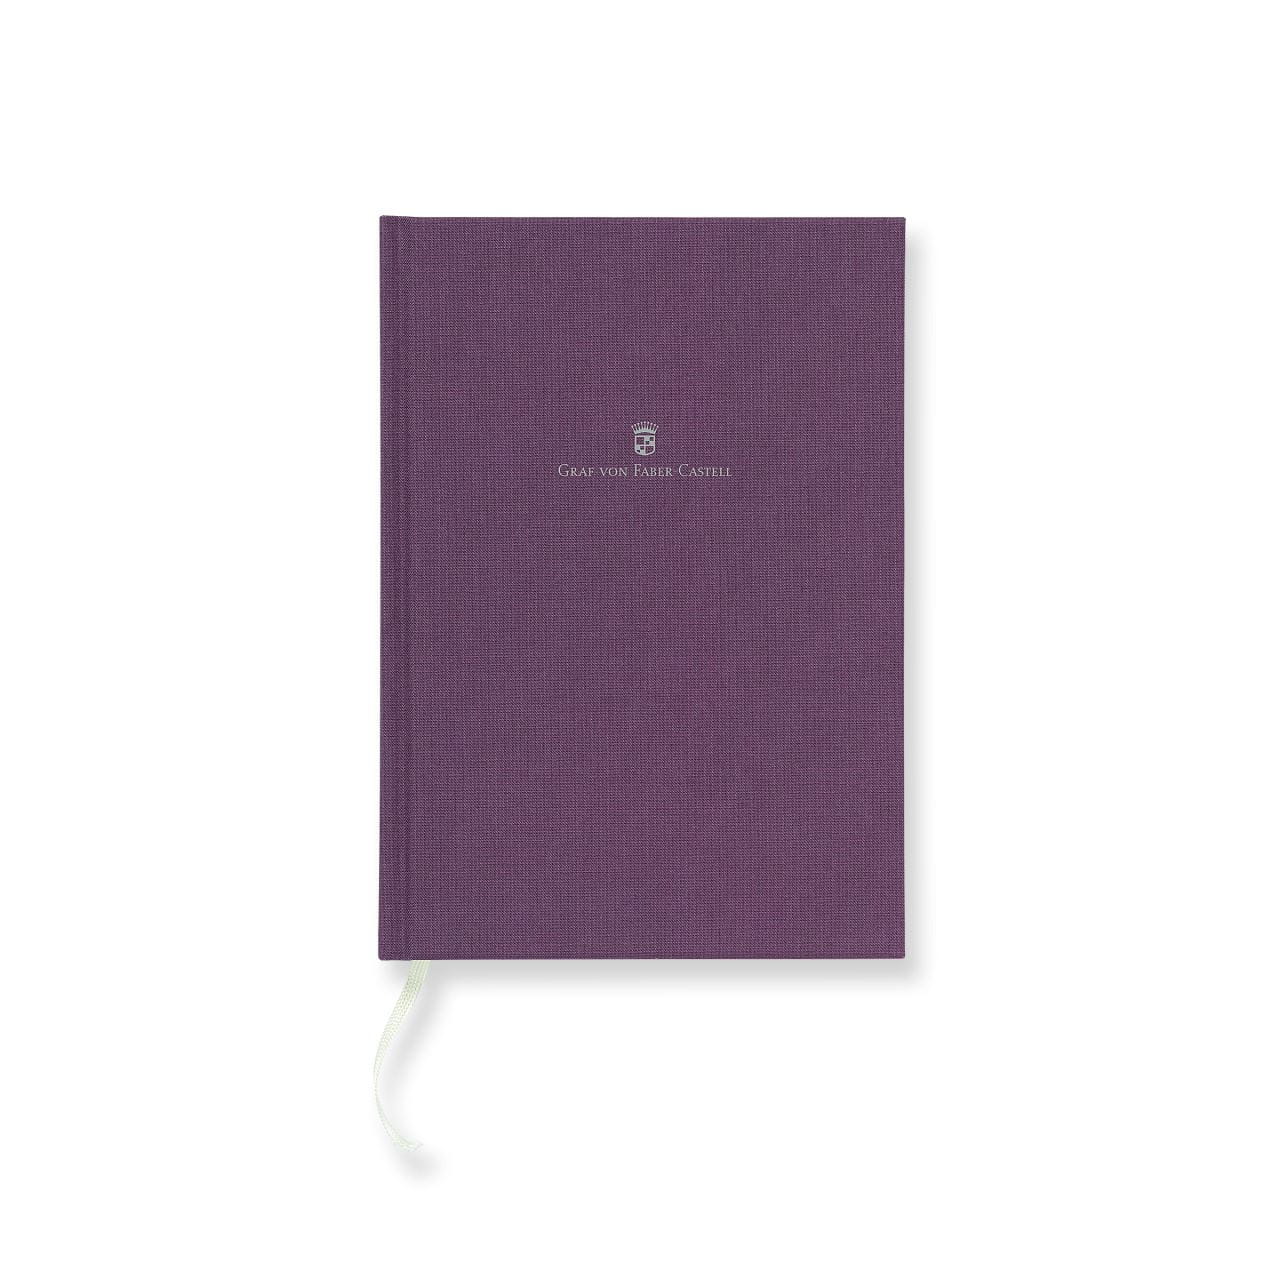 Graf-von-Faber-Castell - Caderno com capa de linho A5 Azul Violeta